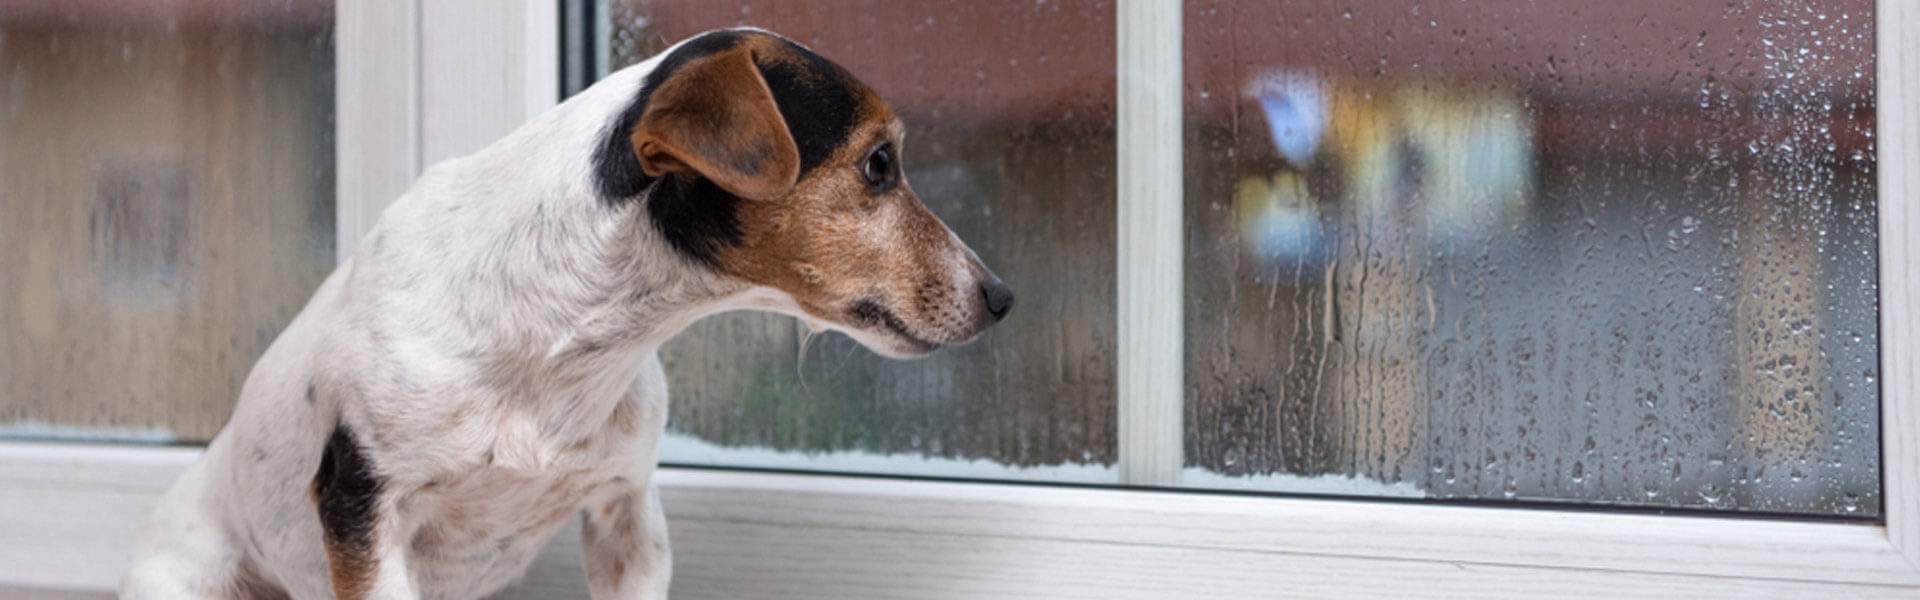 din hund af separationsangst? 7 effektive tips til at hjælpe en stresset hund